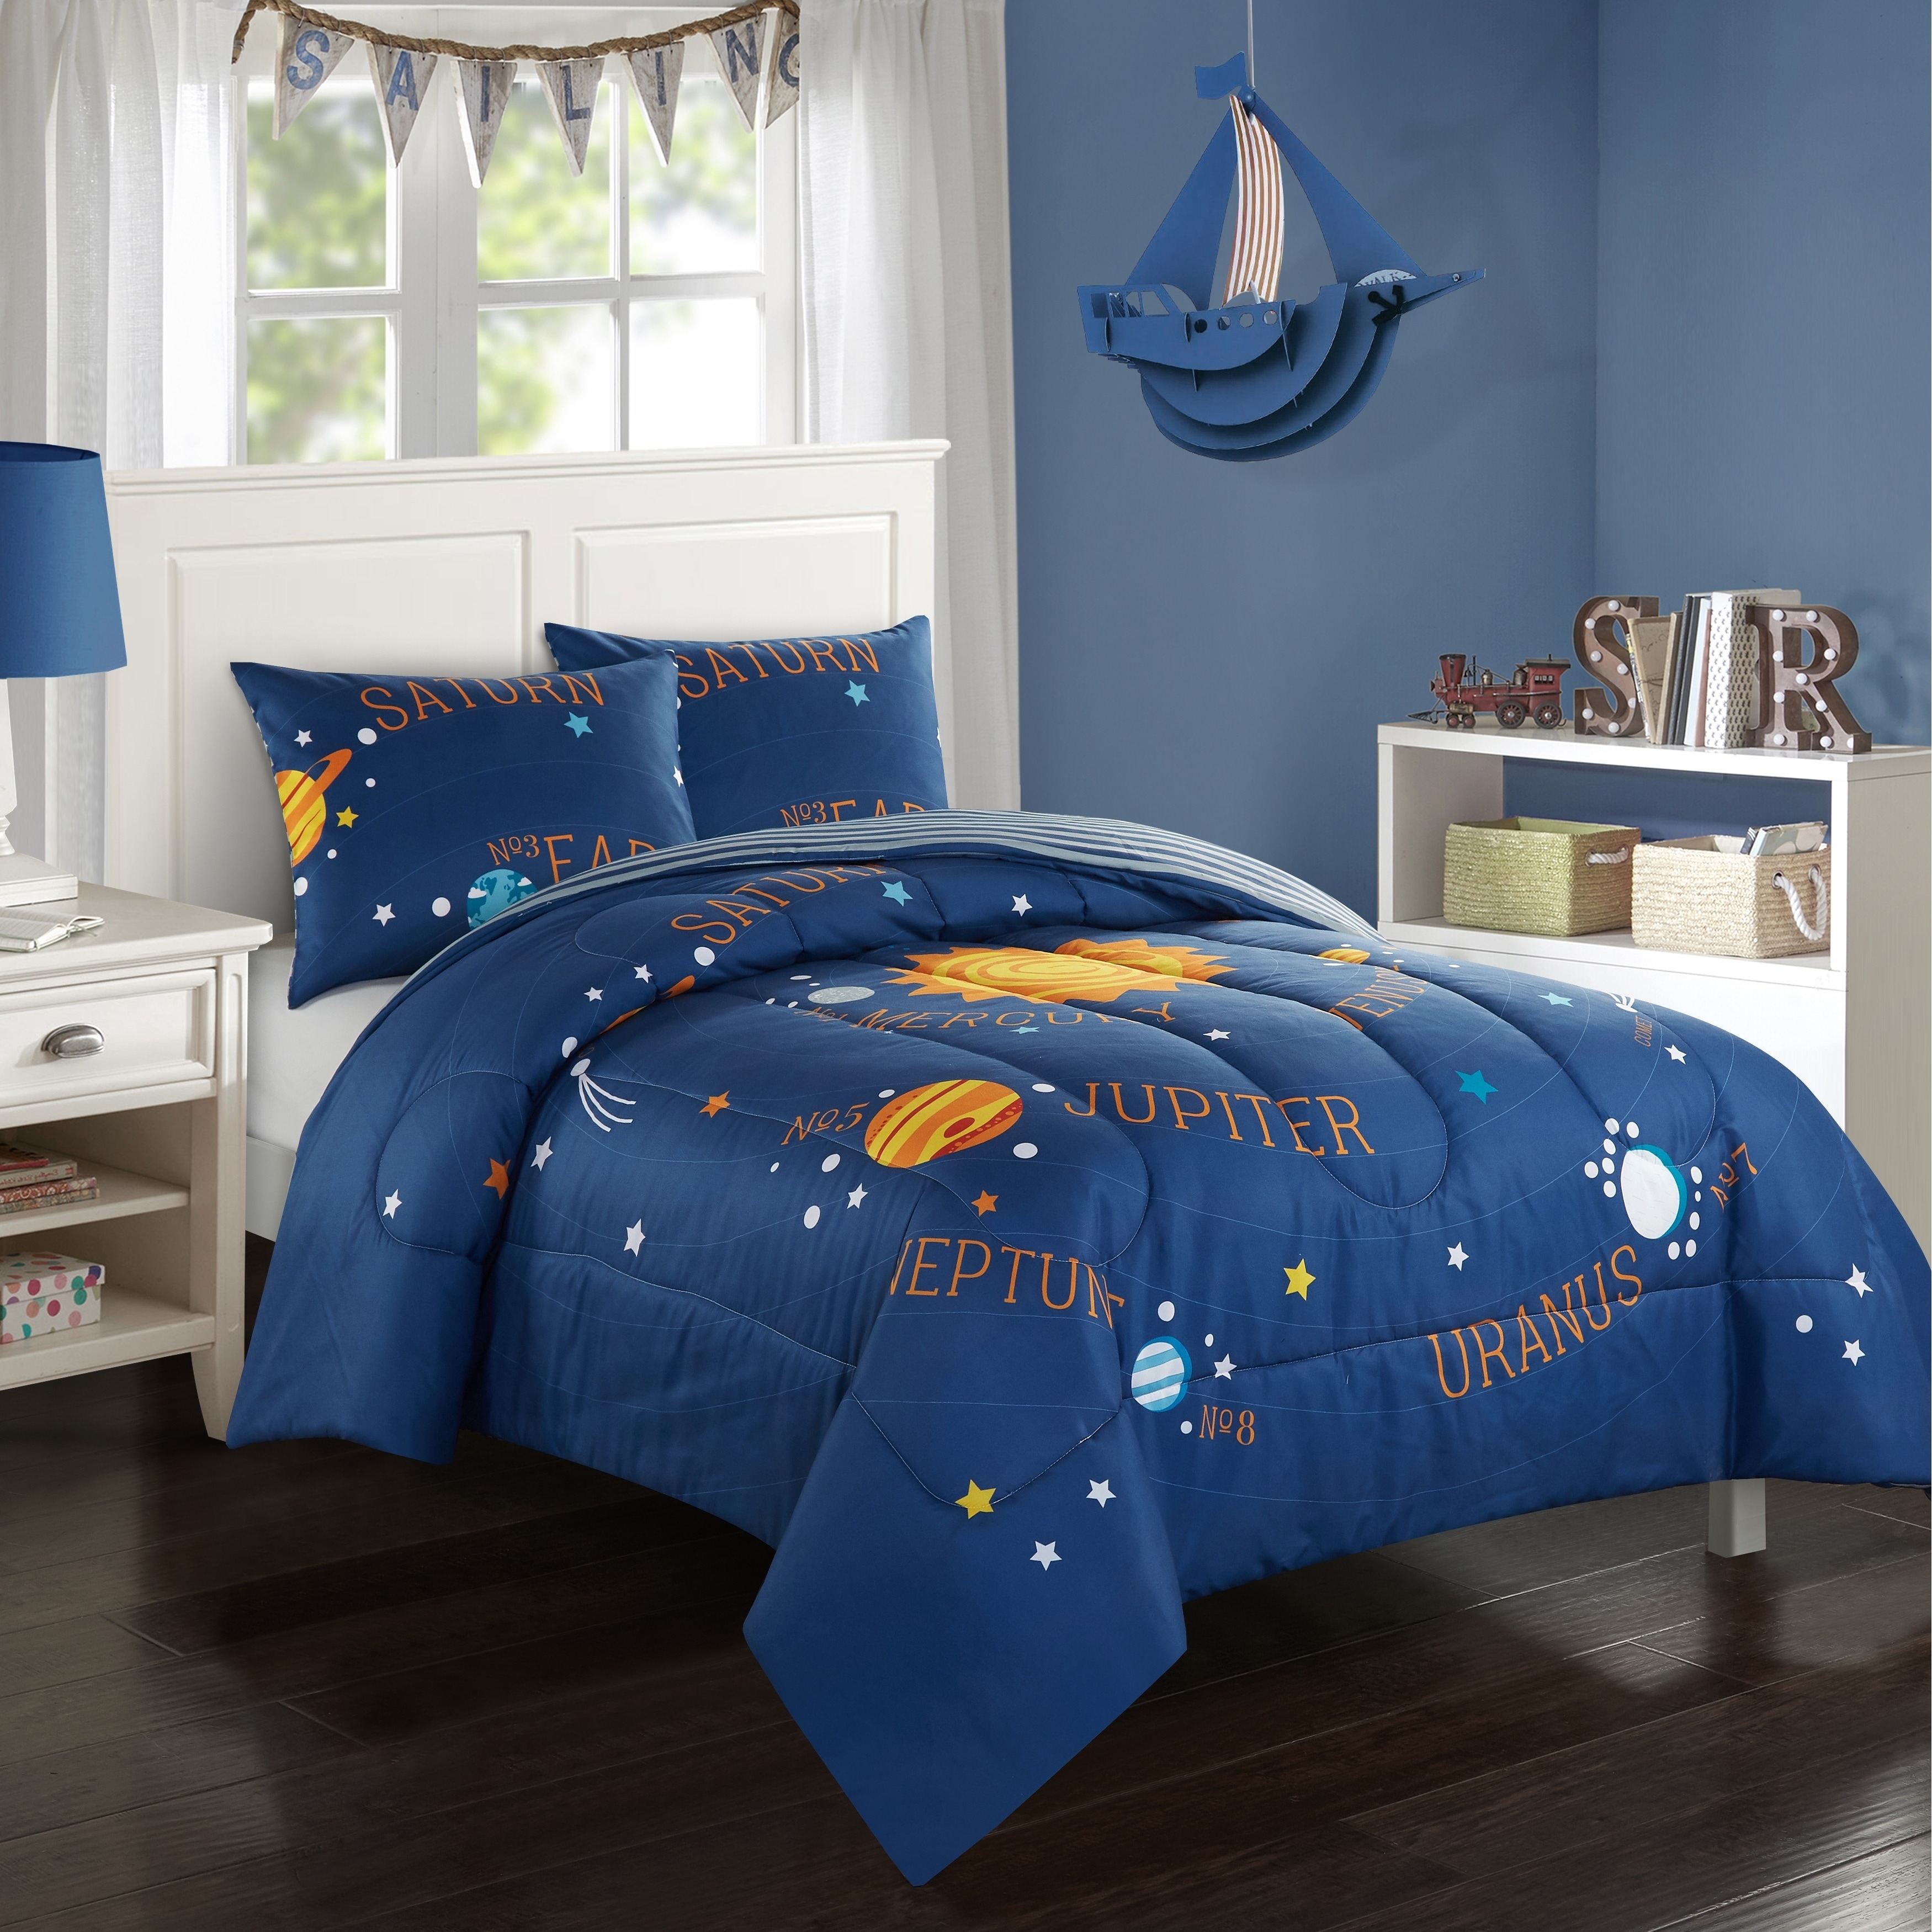 Solar System Bedroom Set / Solar System Bed Set 3d Model 59 Max Free3d ... - Solar System Comforter Set 1fa6D816 Bebf 4c06 A0e1 39c5f8937ba8